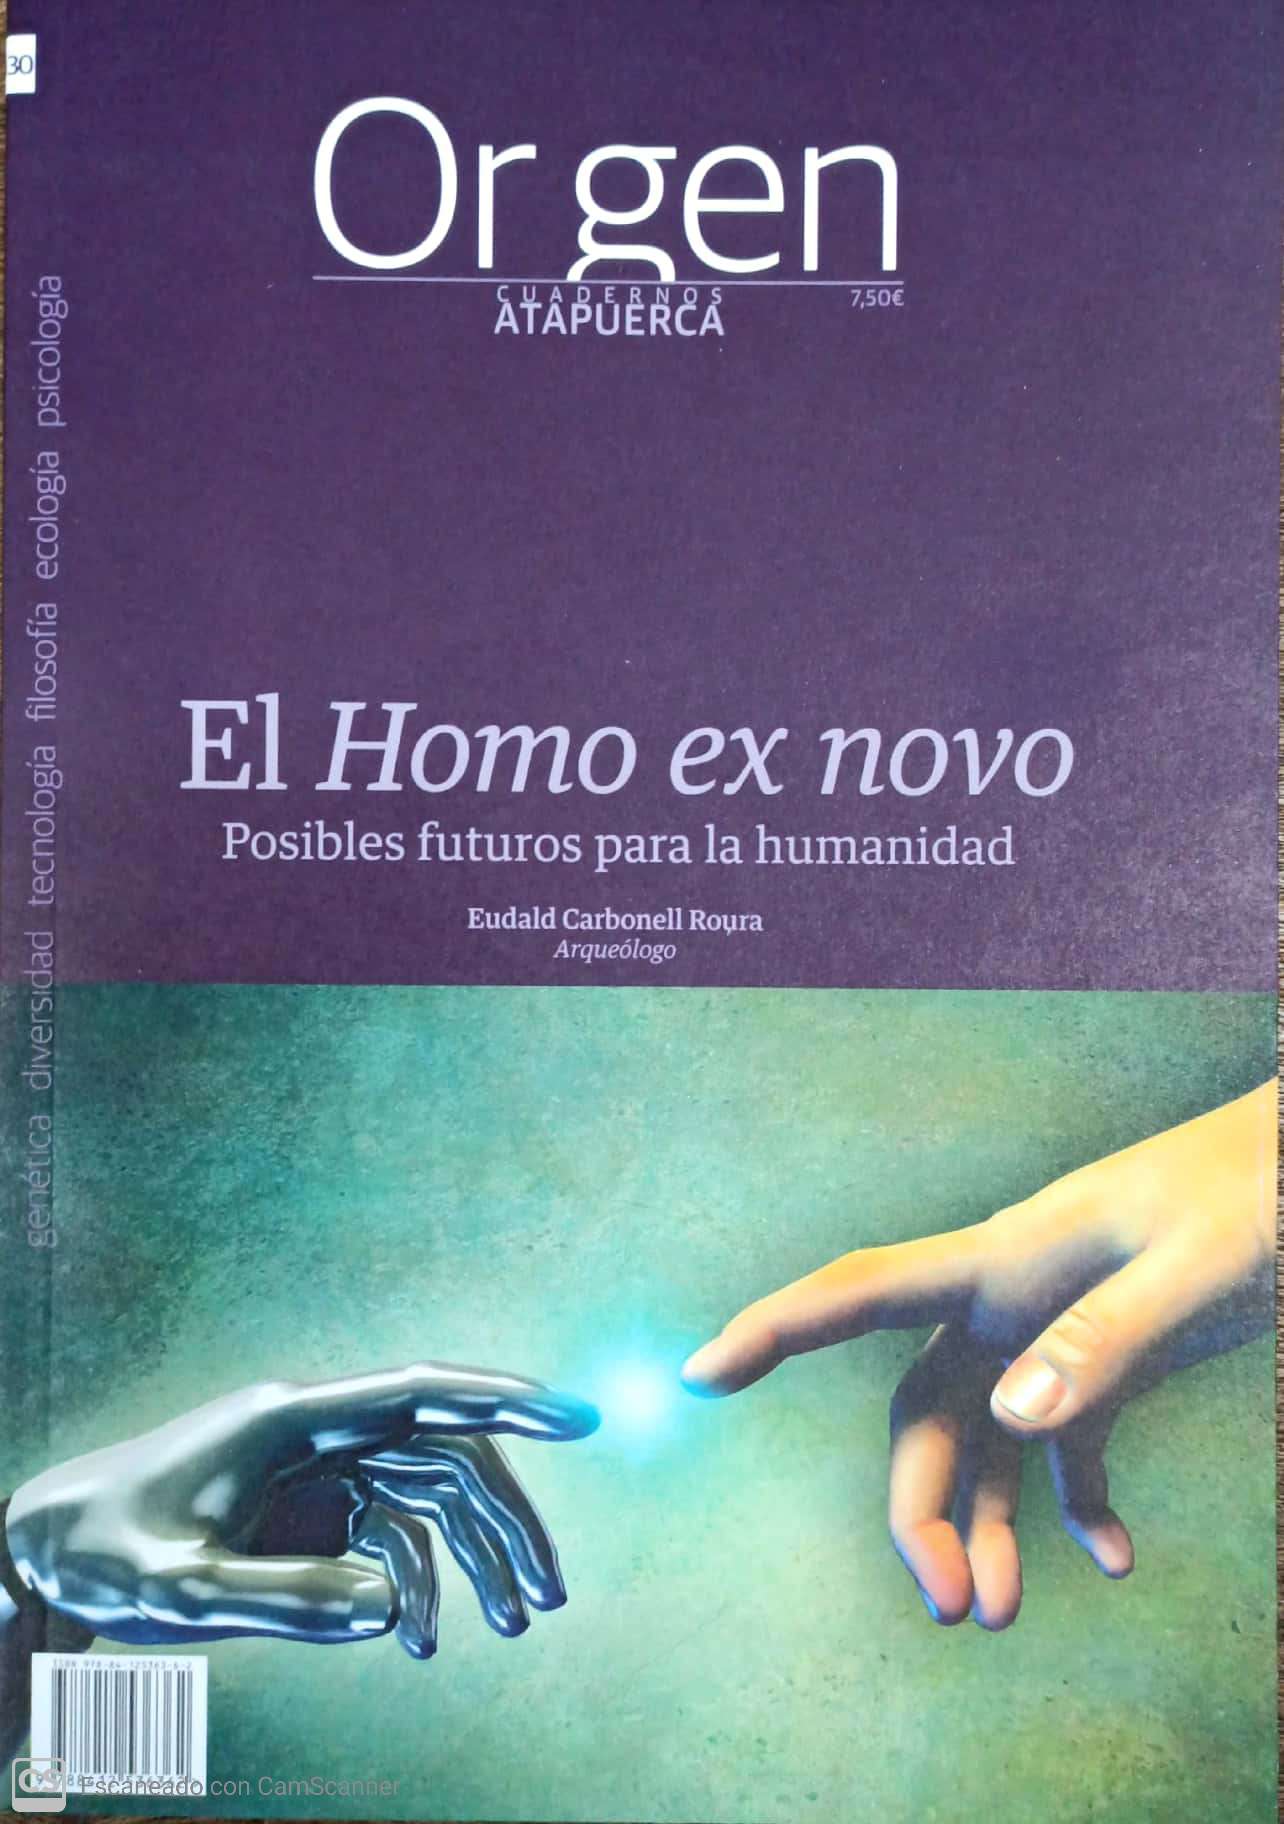 El Homo ex novo: posibles futuros para la humanidad